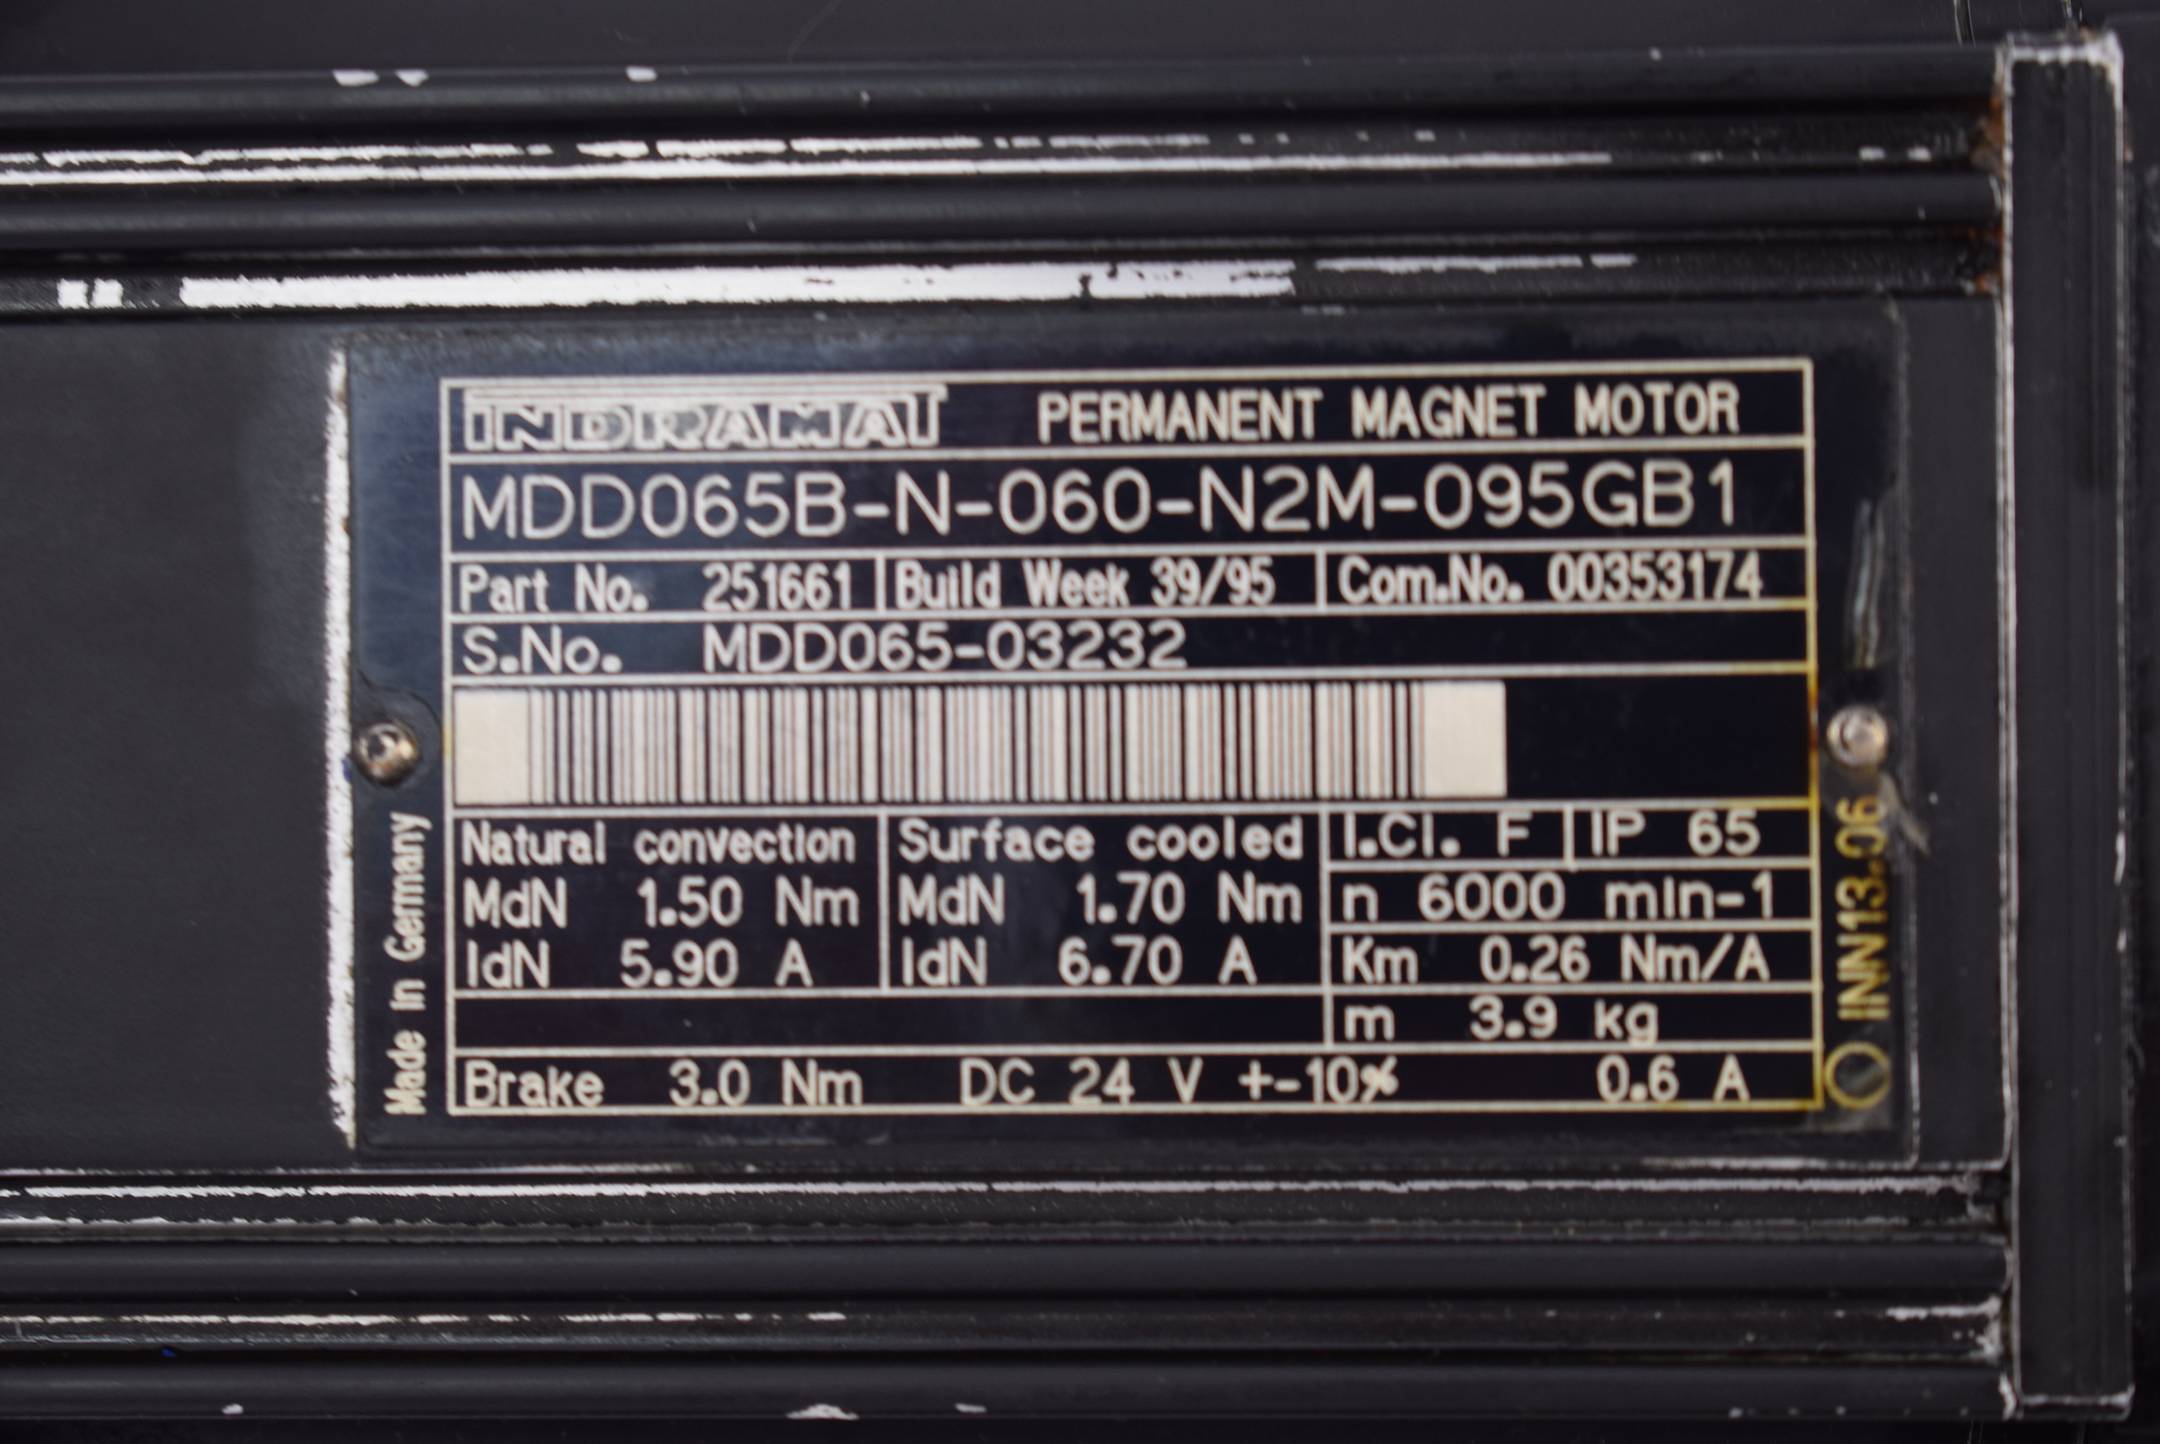 Indramat Permanent Magnet Motor MDD065B-N-060-N2M-095GB1